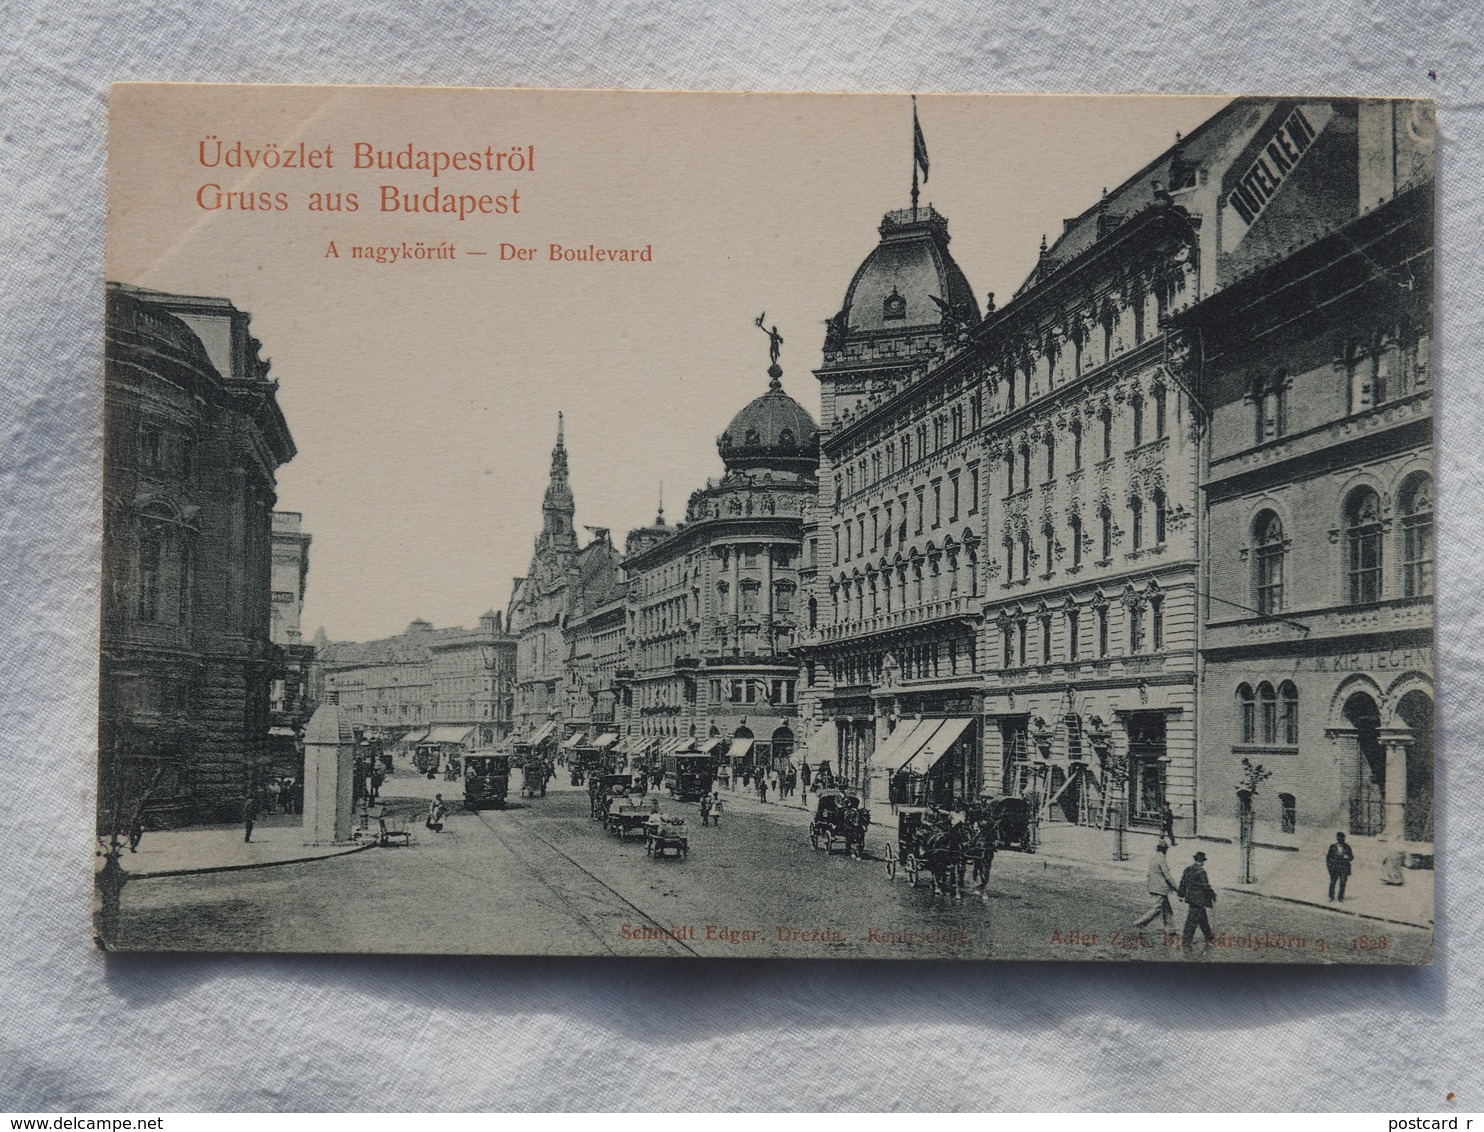 Hungary Magyar  Bruss Aus Budapest DER BOULEVARD       A 189 - Hungary